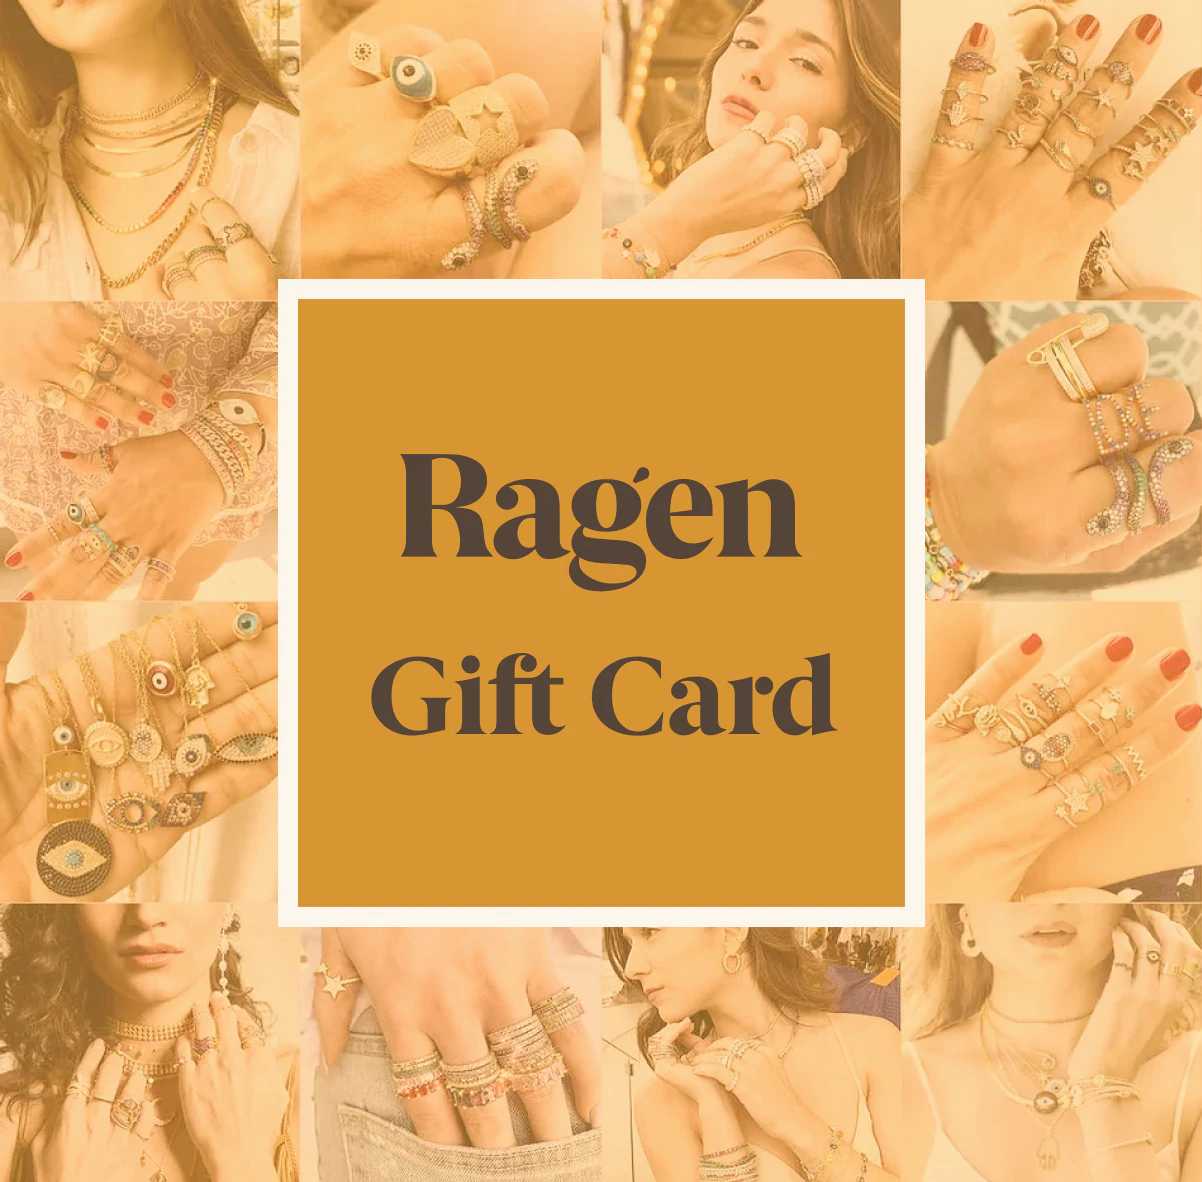 Gift Card – RAGEN